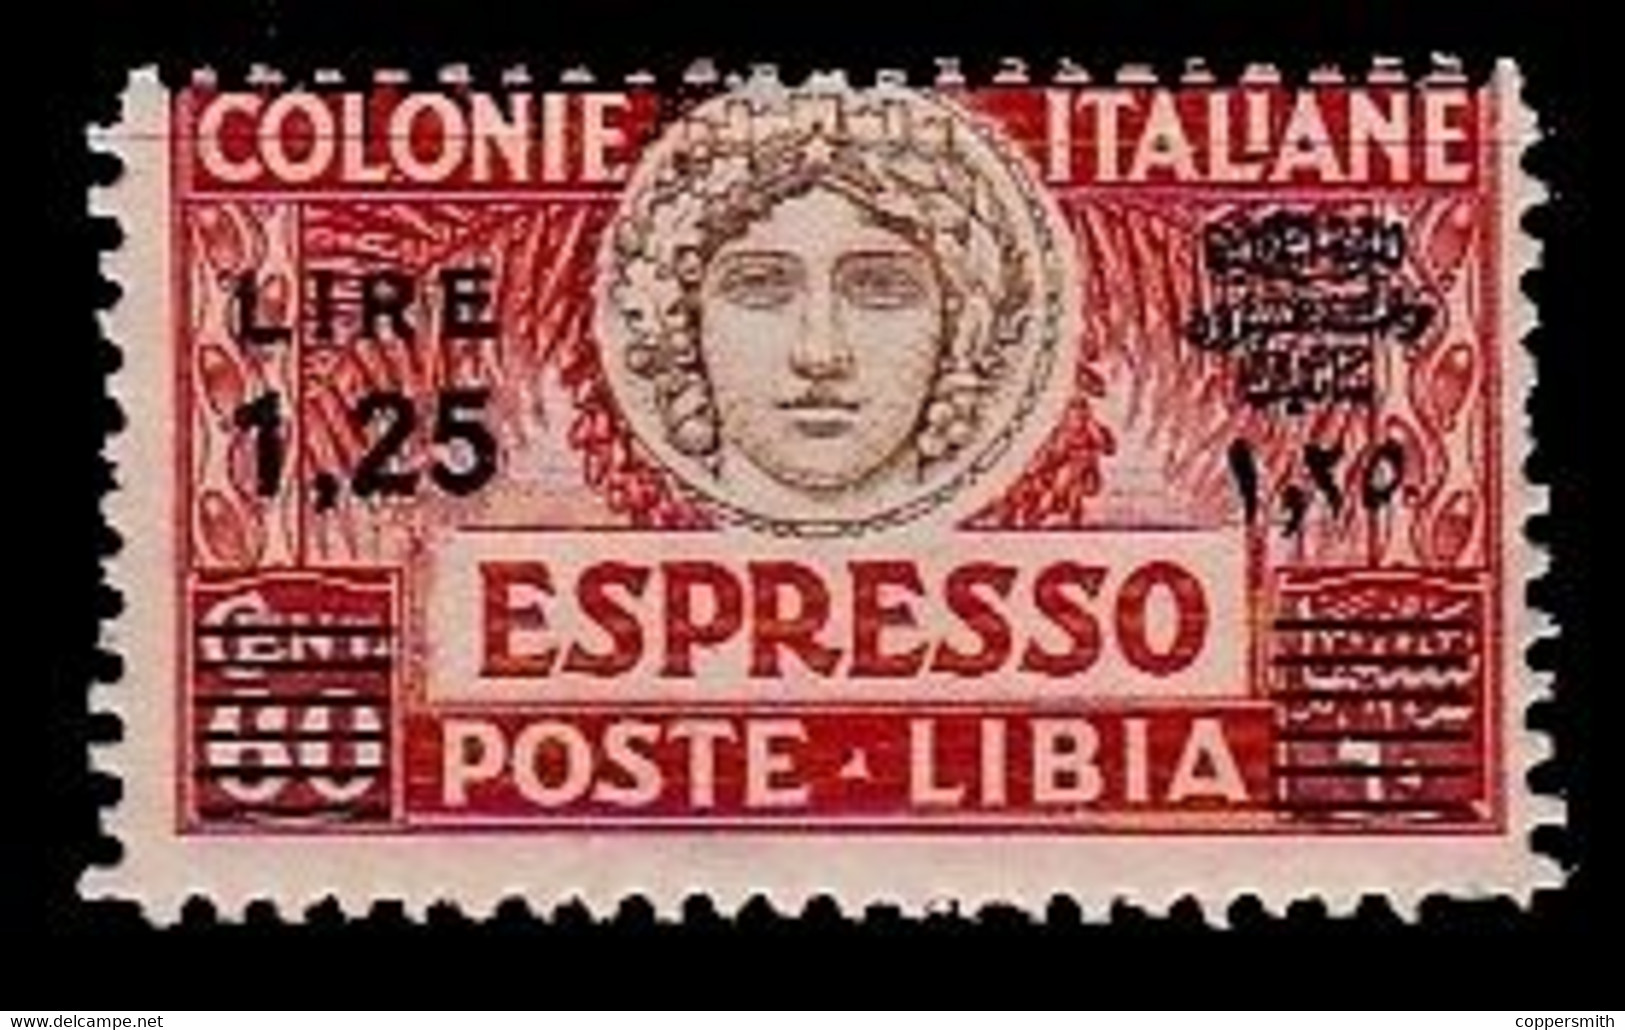 (003) Italie / Italy / Libya  Express Overprint / Surcharge / Eilmarke Aufdruck ** / Mnh  Michel 65 AC - Libia